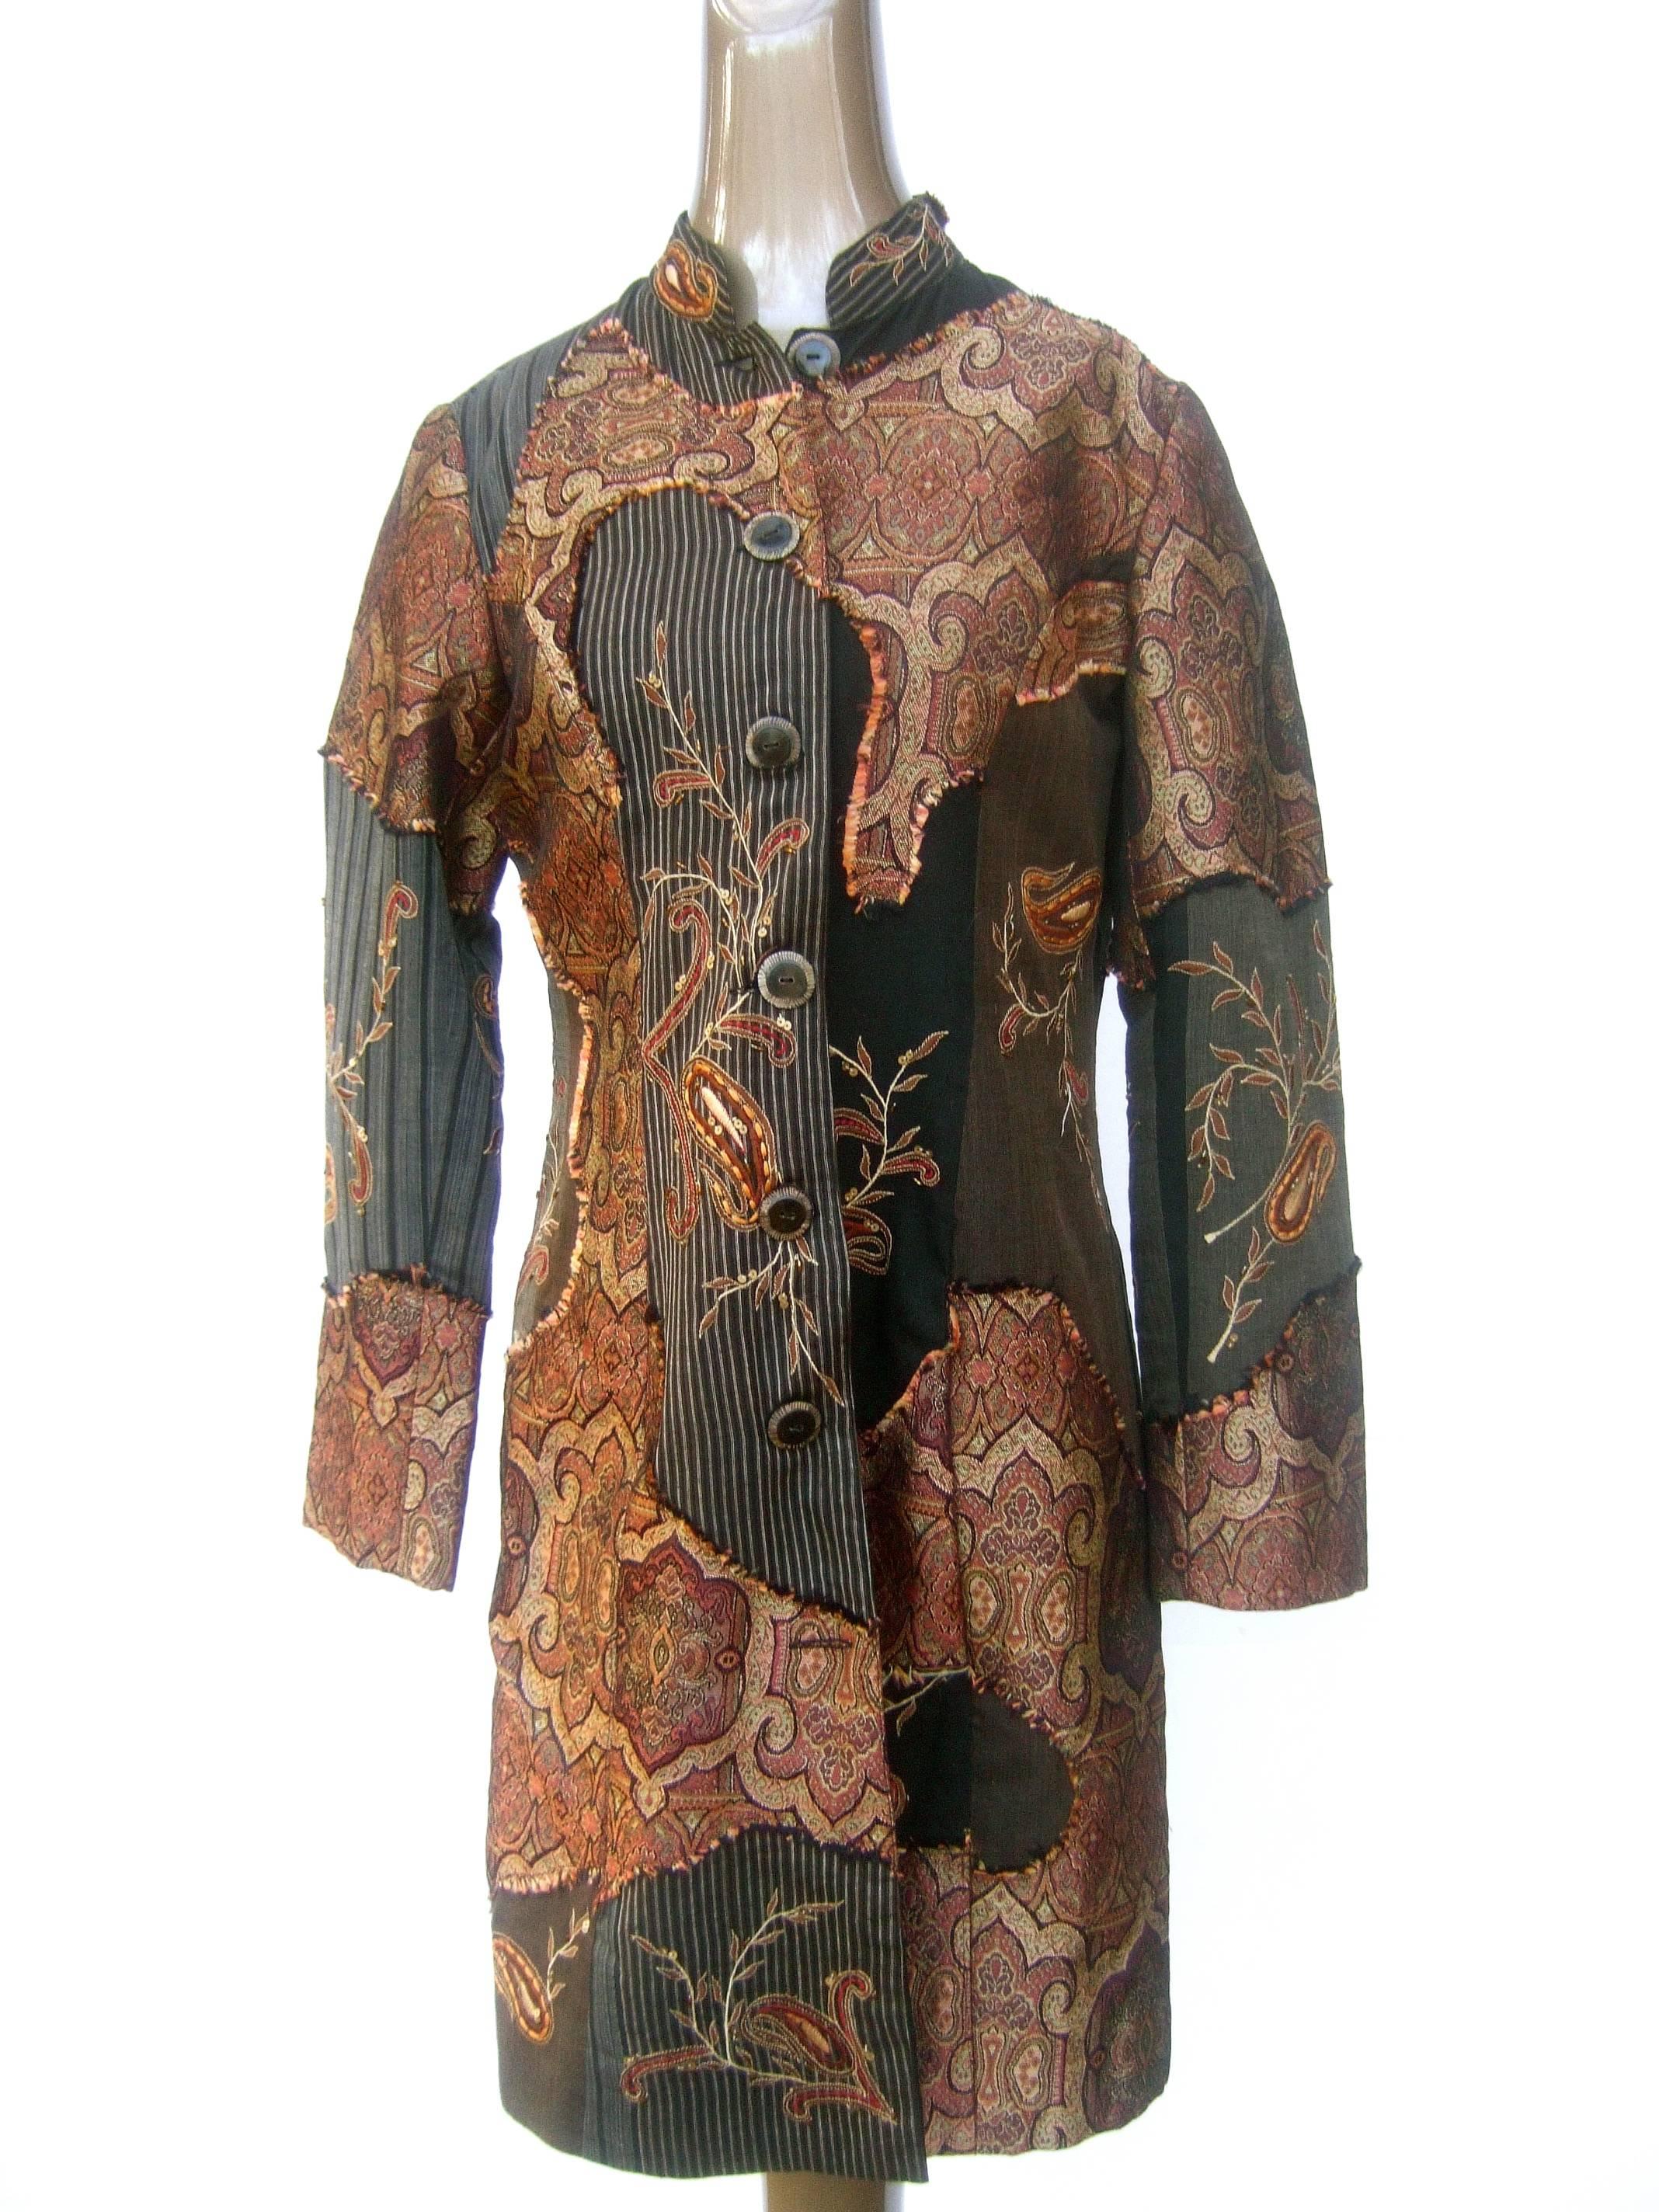 Neiman Marcus Bohemian Paisley Cotton Applique Duster Coat c 1990s 2